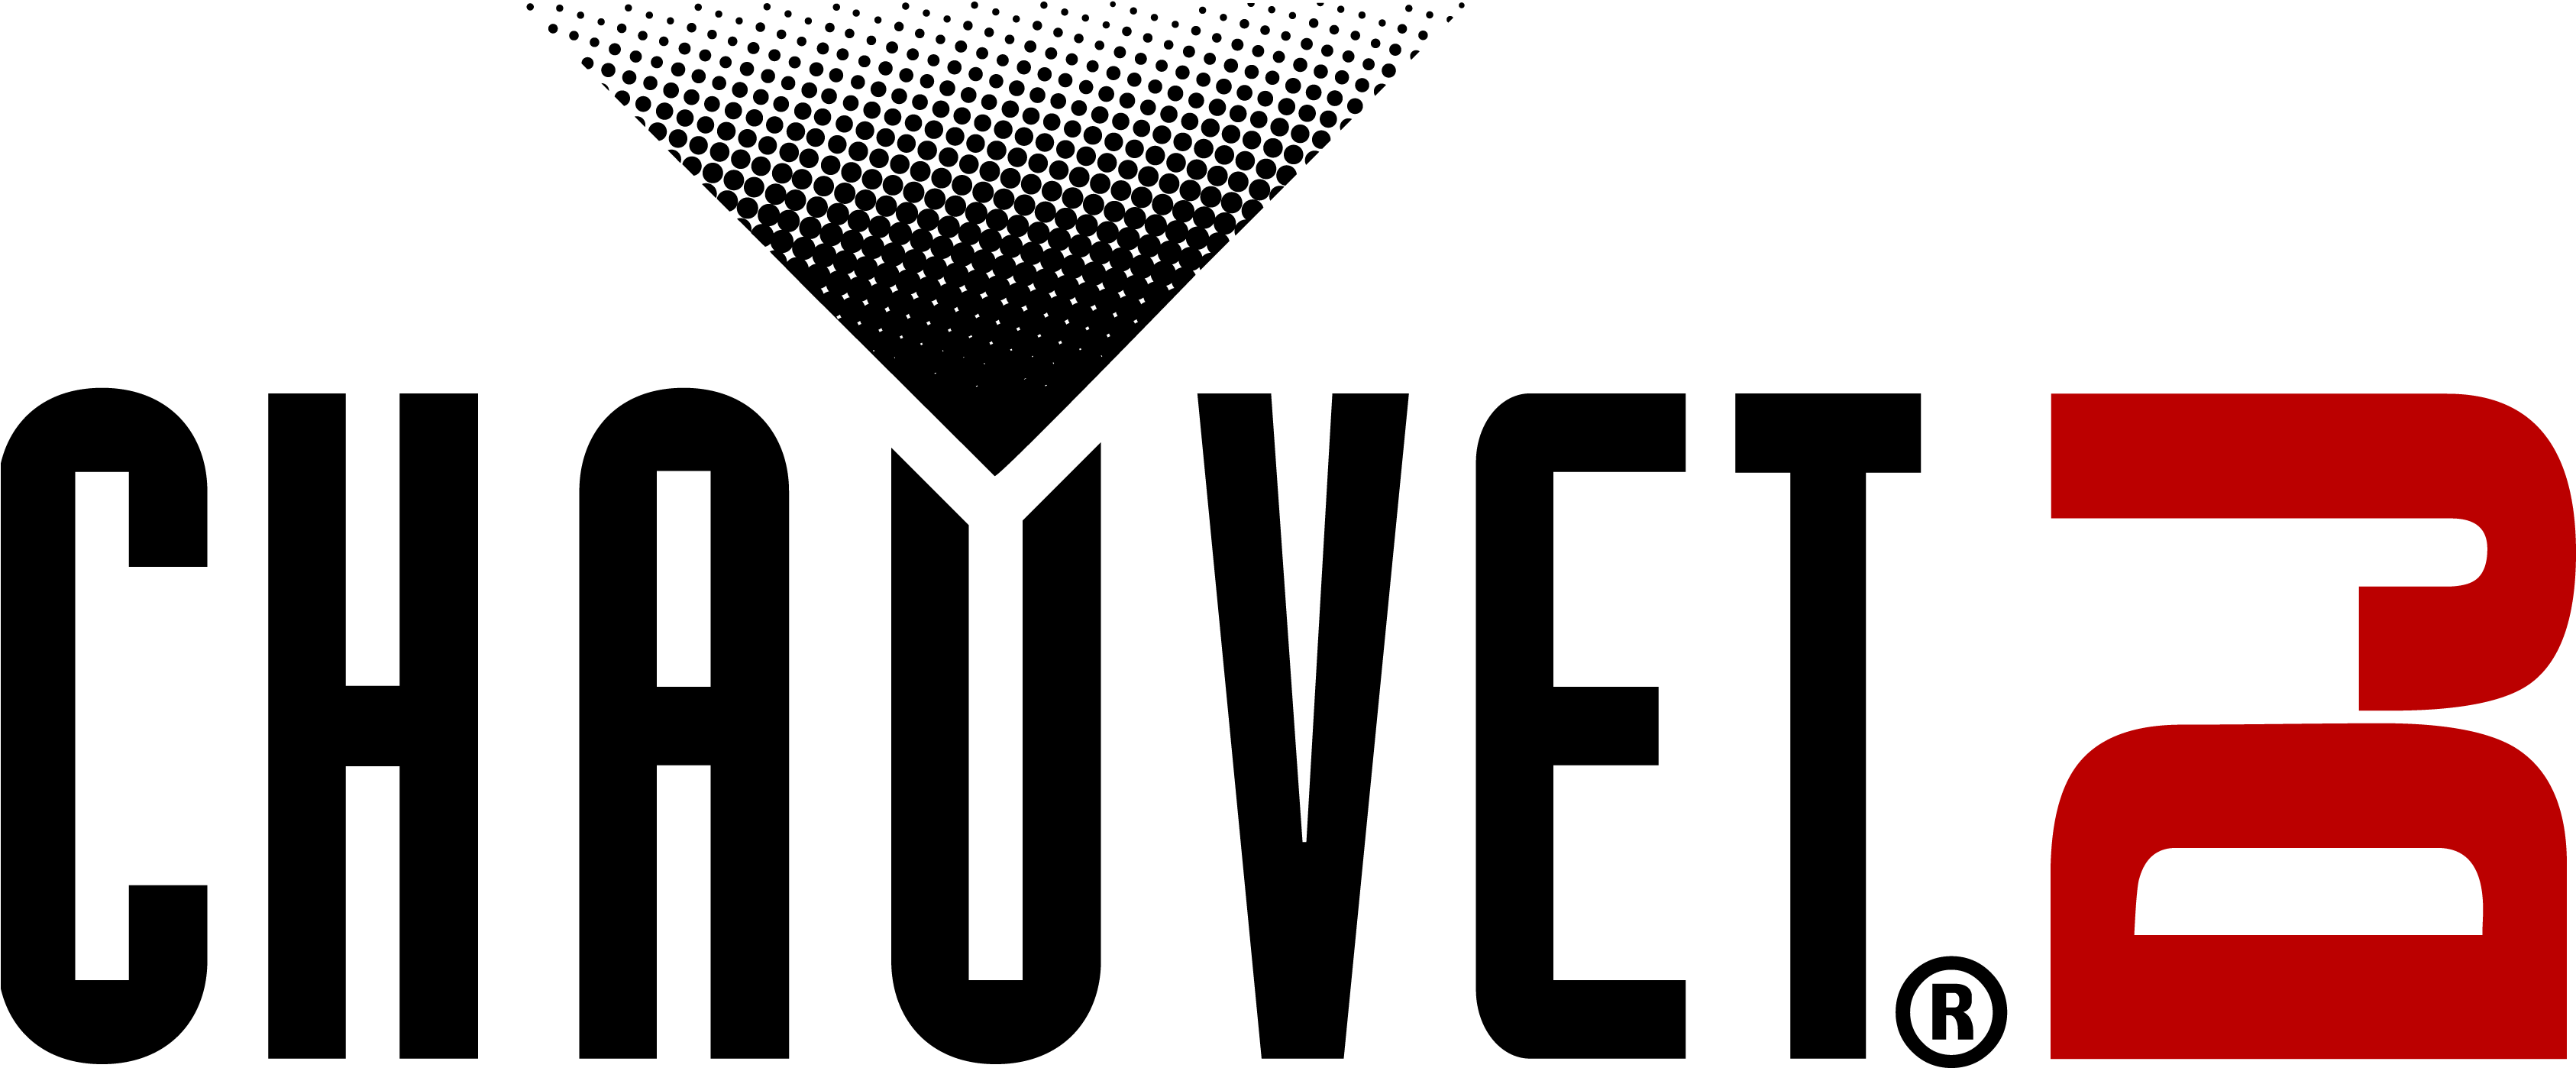 Chauvet Logo Dj Logo - Chauvet Dj Logo (3379x1397), Png Download